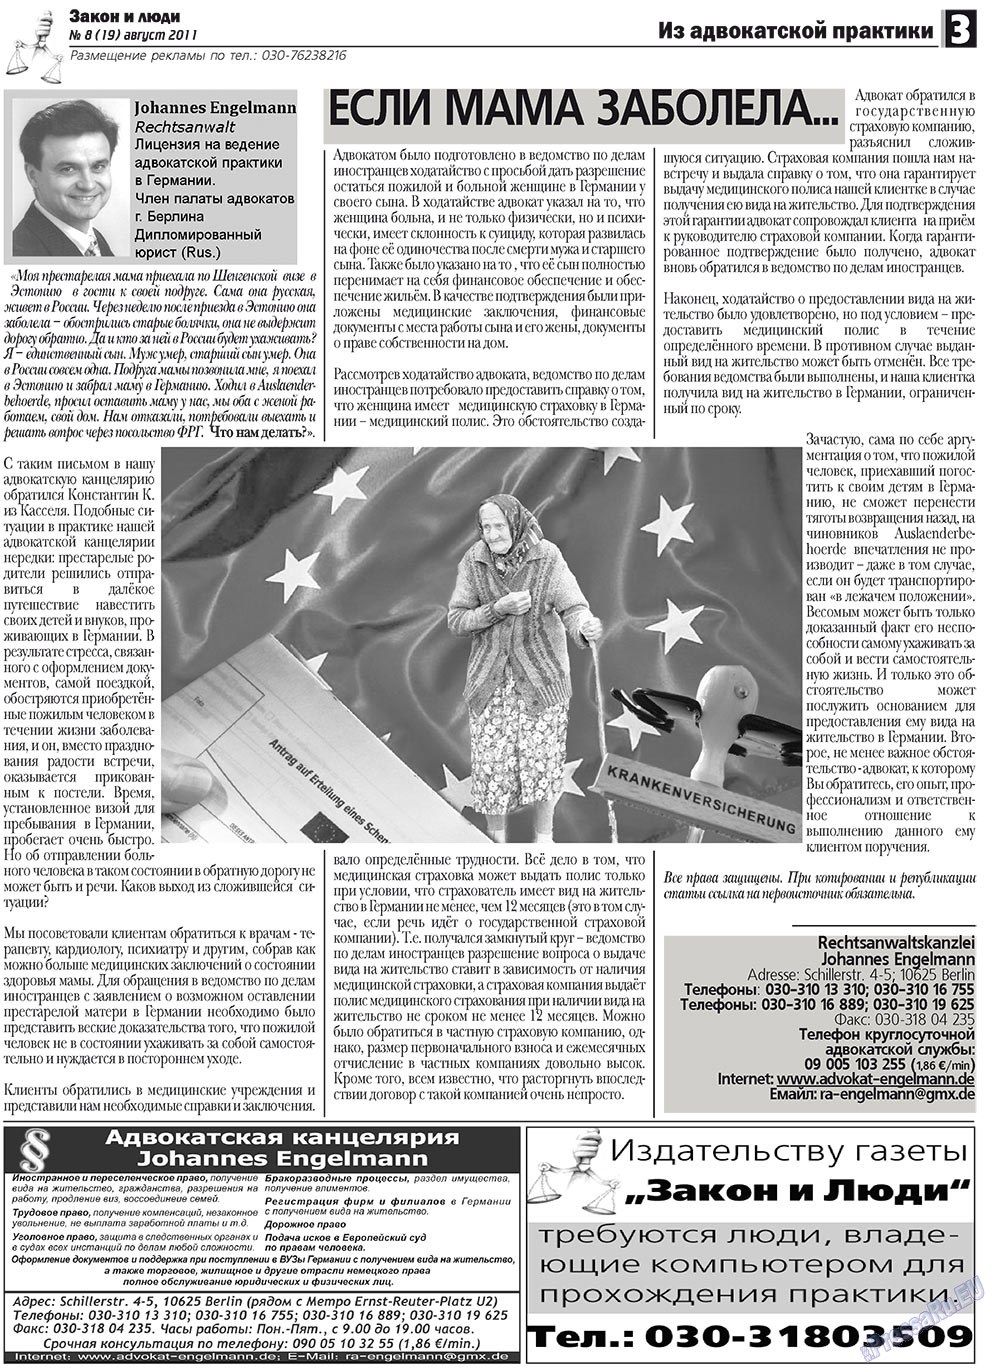 Закон и люди (газета). 2011 год, номер 8, стр. 3